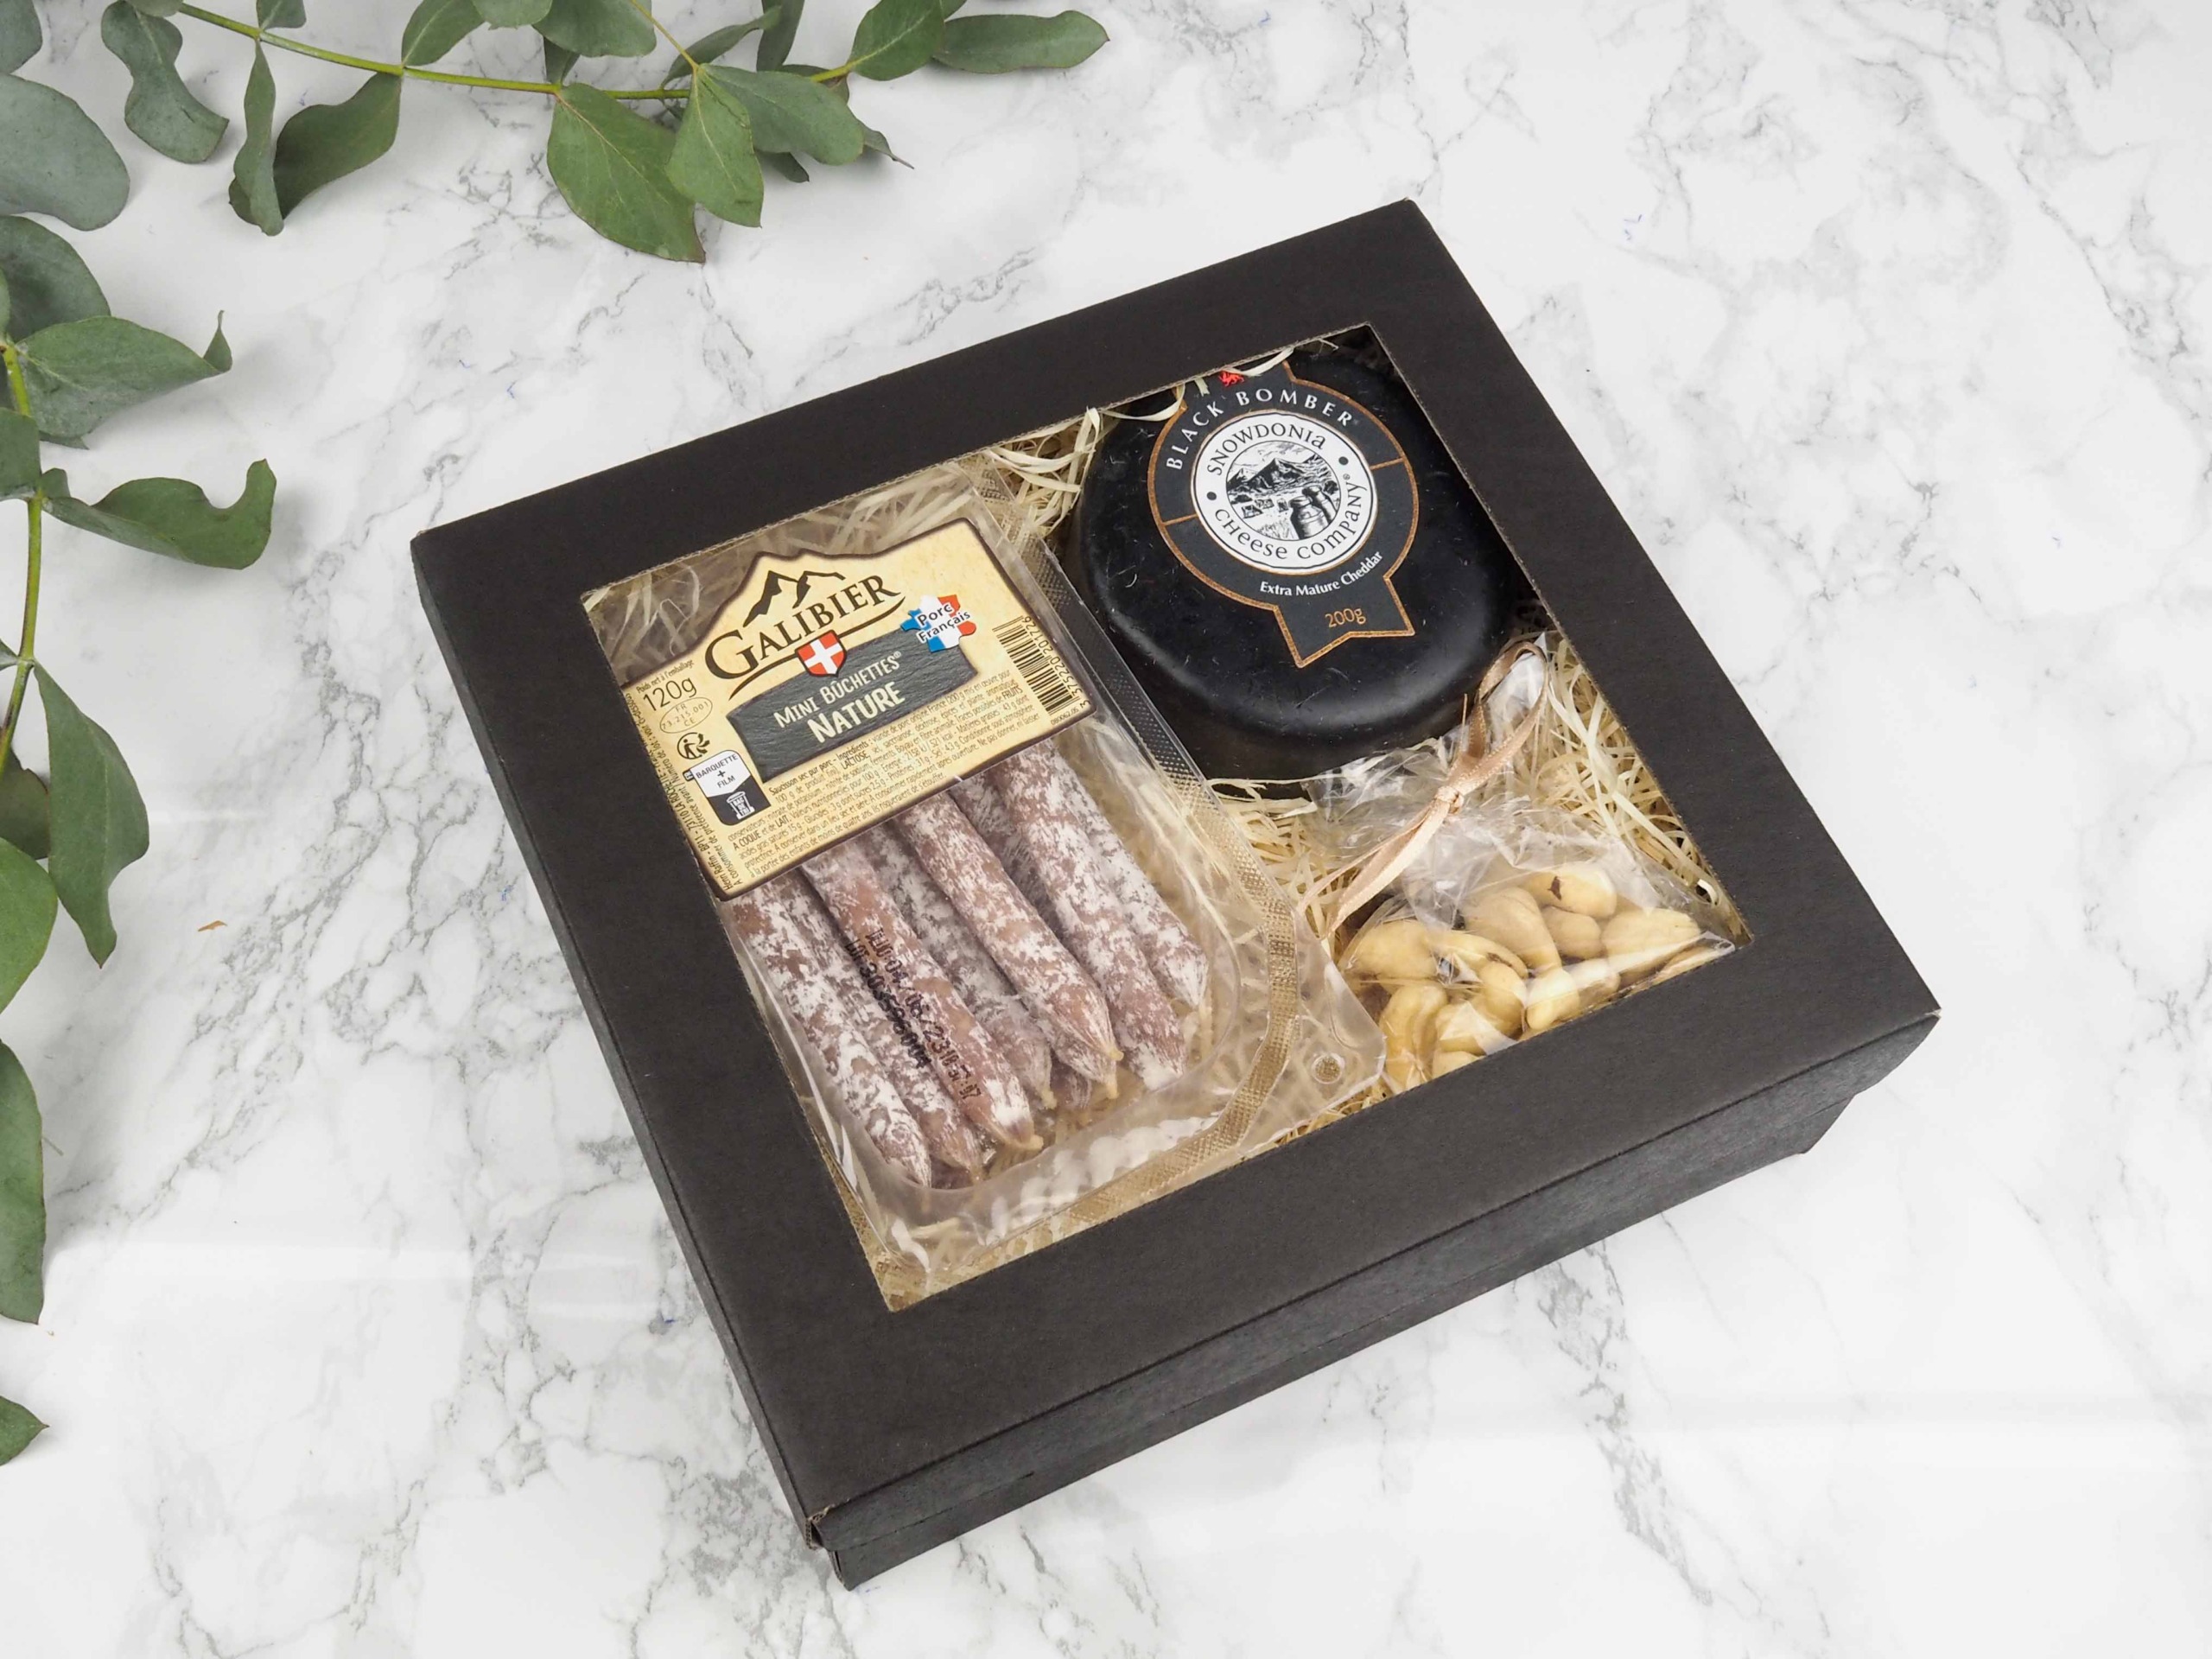 Dárkový balíček Black Nature v sobě obsahuje francouzské minisalámky natur, britský sýr cheddar Black Bomber a mix oříšků.